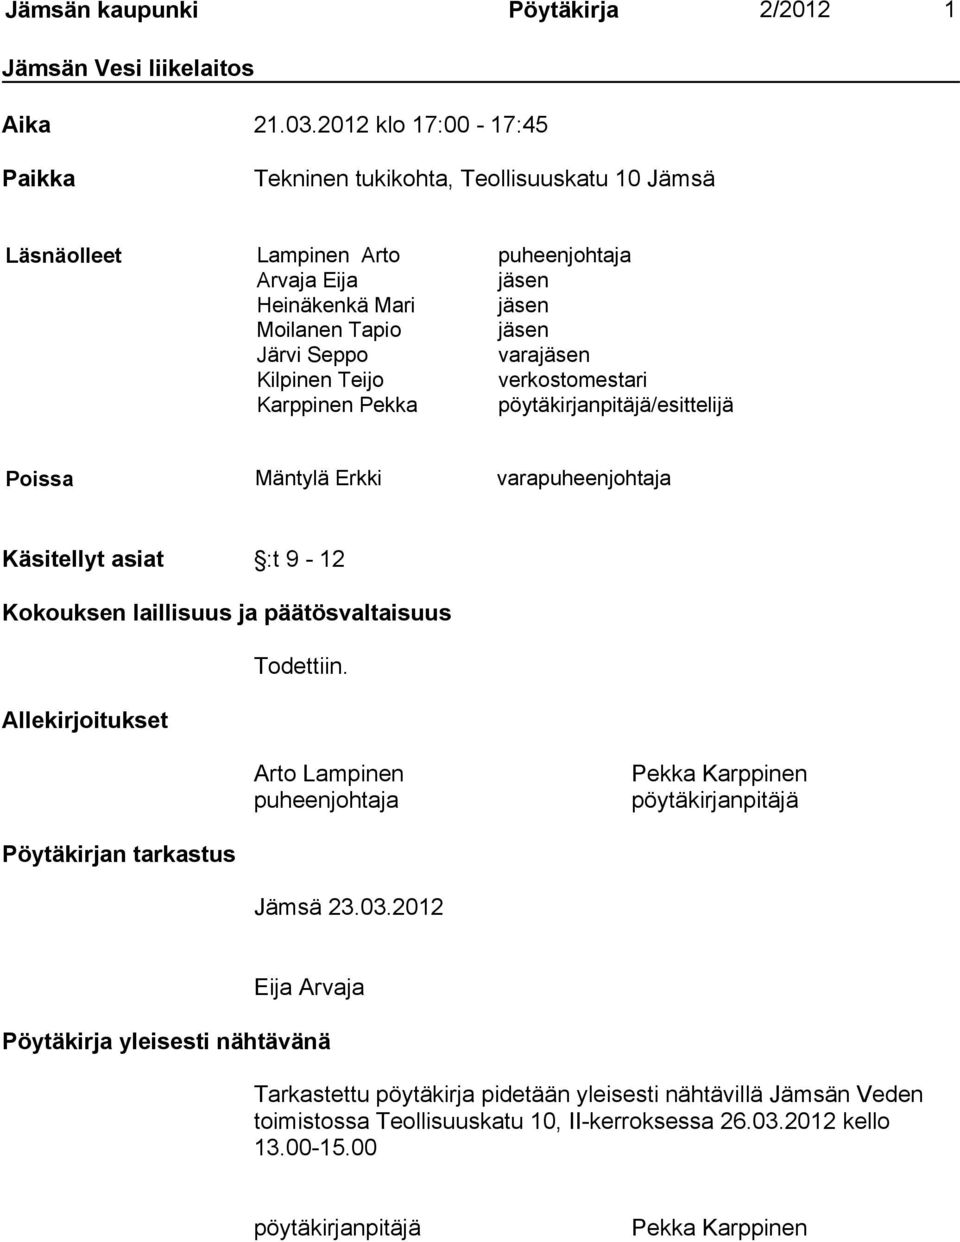 Kilpinen Teijo verkostomestari Karppinen Pekka pöytäkirjanpitäjä/esittelijä Poissa Mäntylä Erkki varapuheenjohtaja Käsitellyt asiat :t 9-12 Kokouksen laillisuus ja päätösvaltaisuus Todettiin.